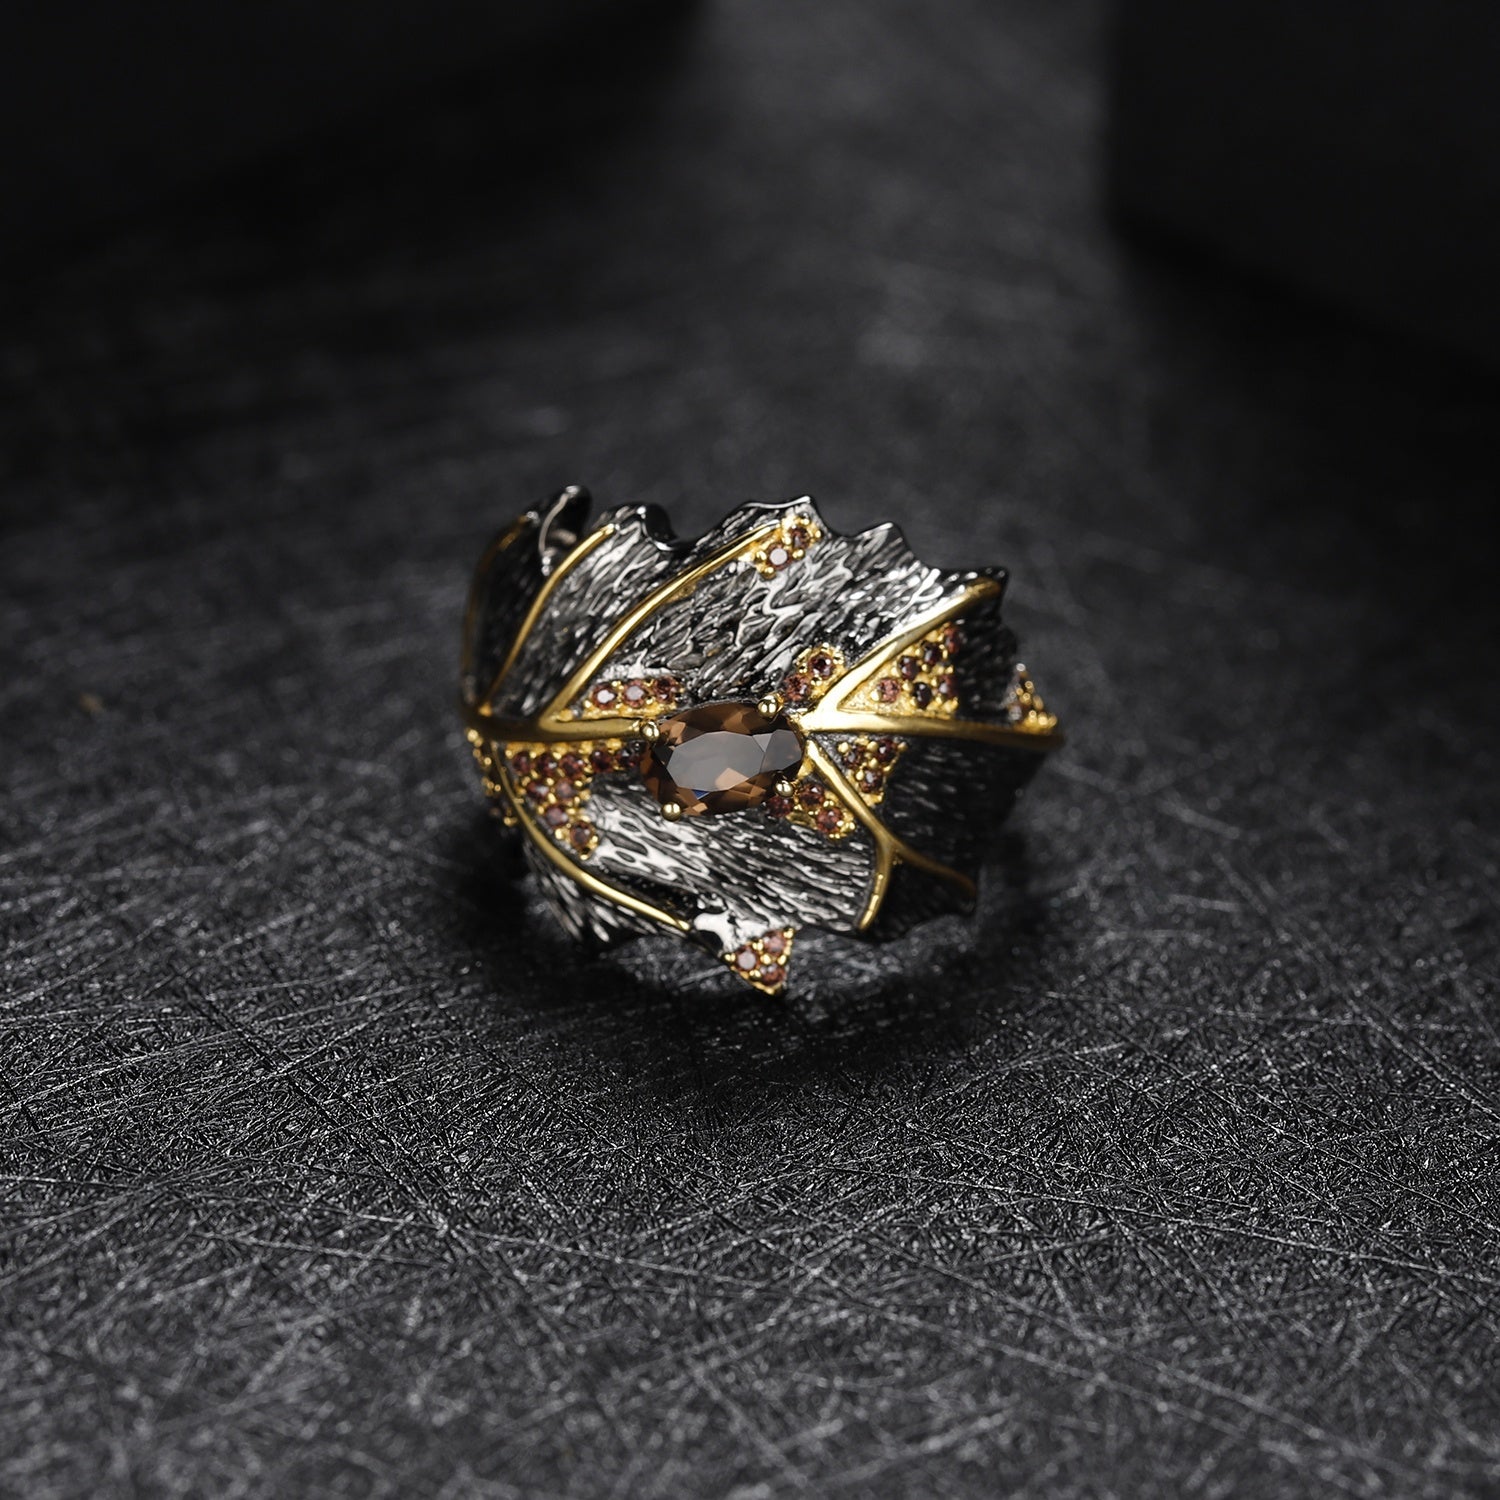 Anillo de Citrino con nano cristal ahumado - Cherine Jewelry